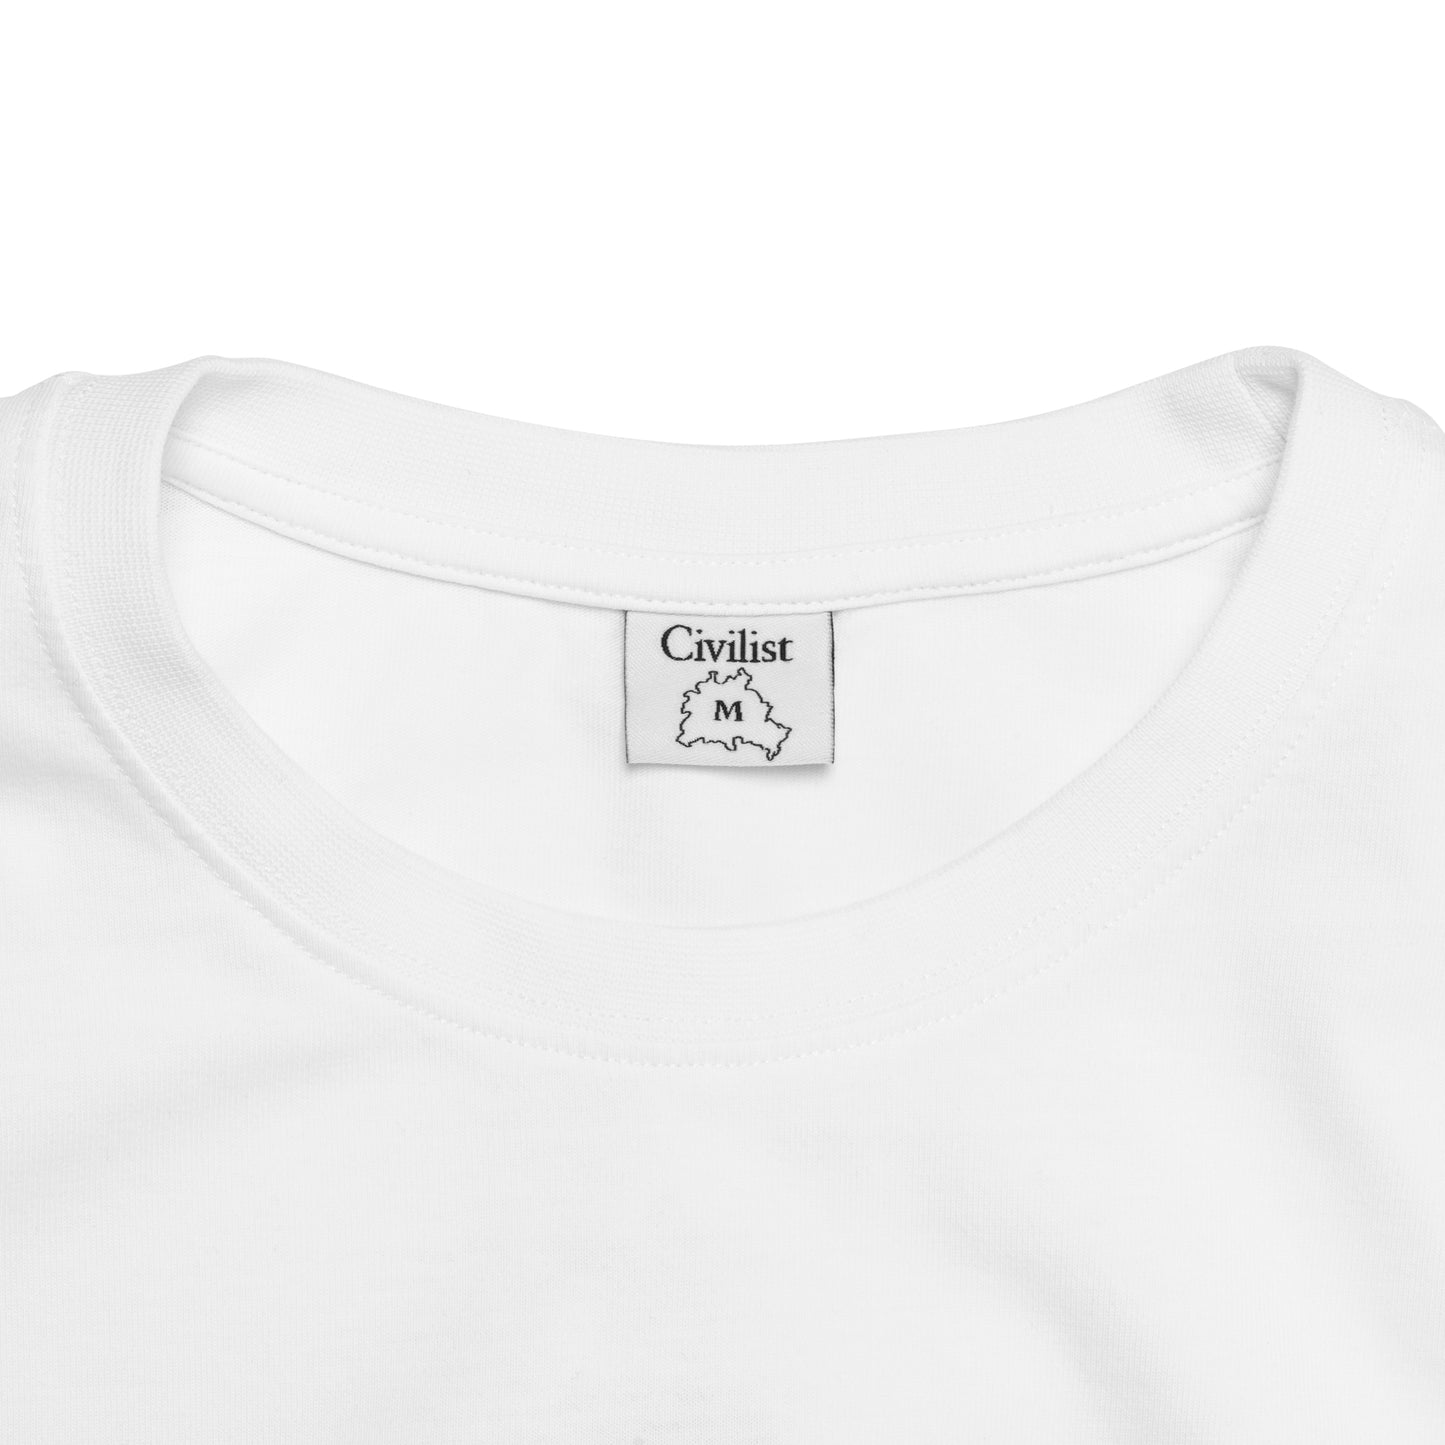 Civilist Mitch T-Shirt Weiß